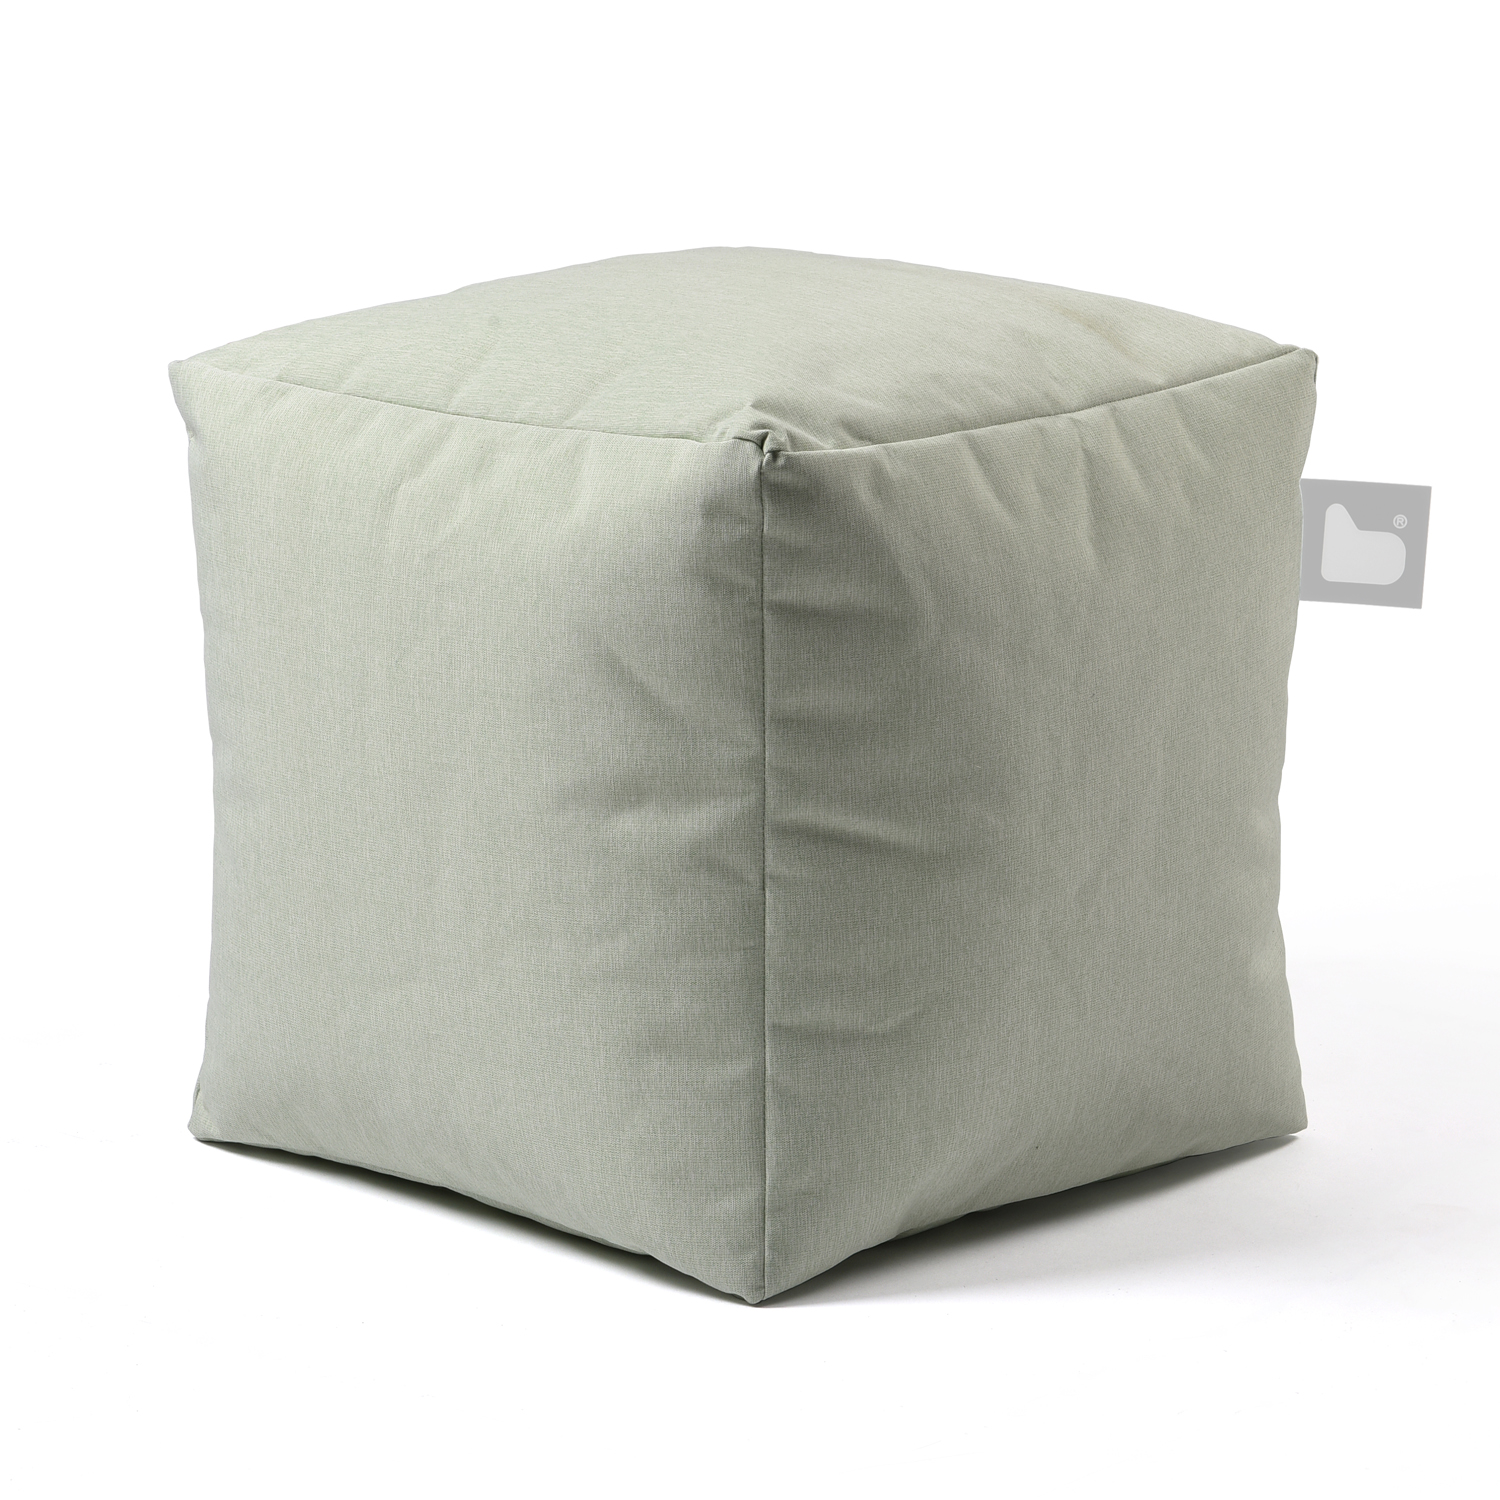 b-box extreme lounging Sitzwürfel In & Outdoor Pastellgrün leicht stabil wasserabweisend UV-beständig